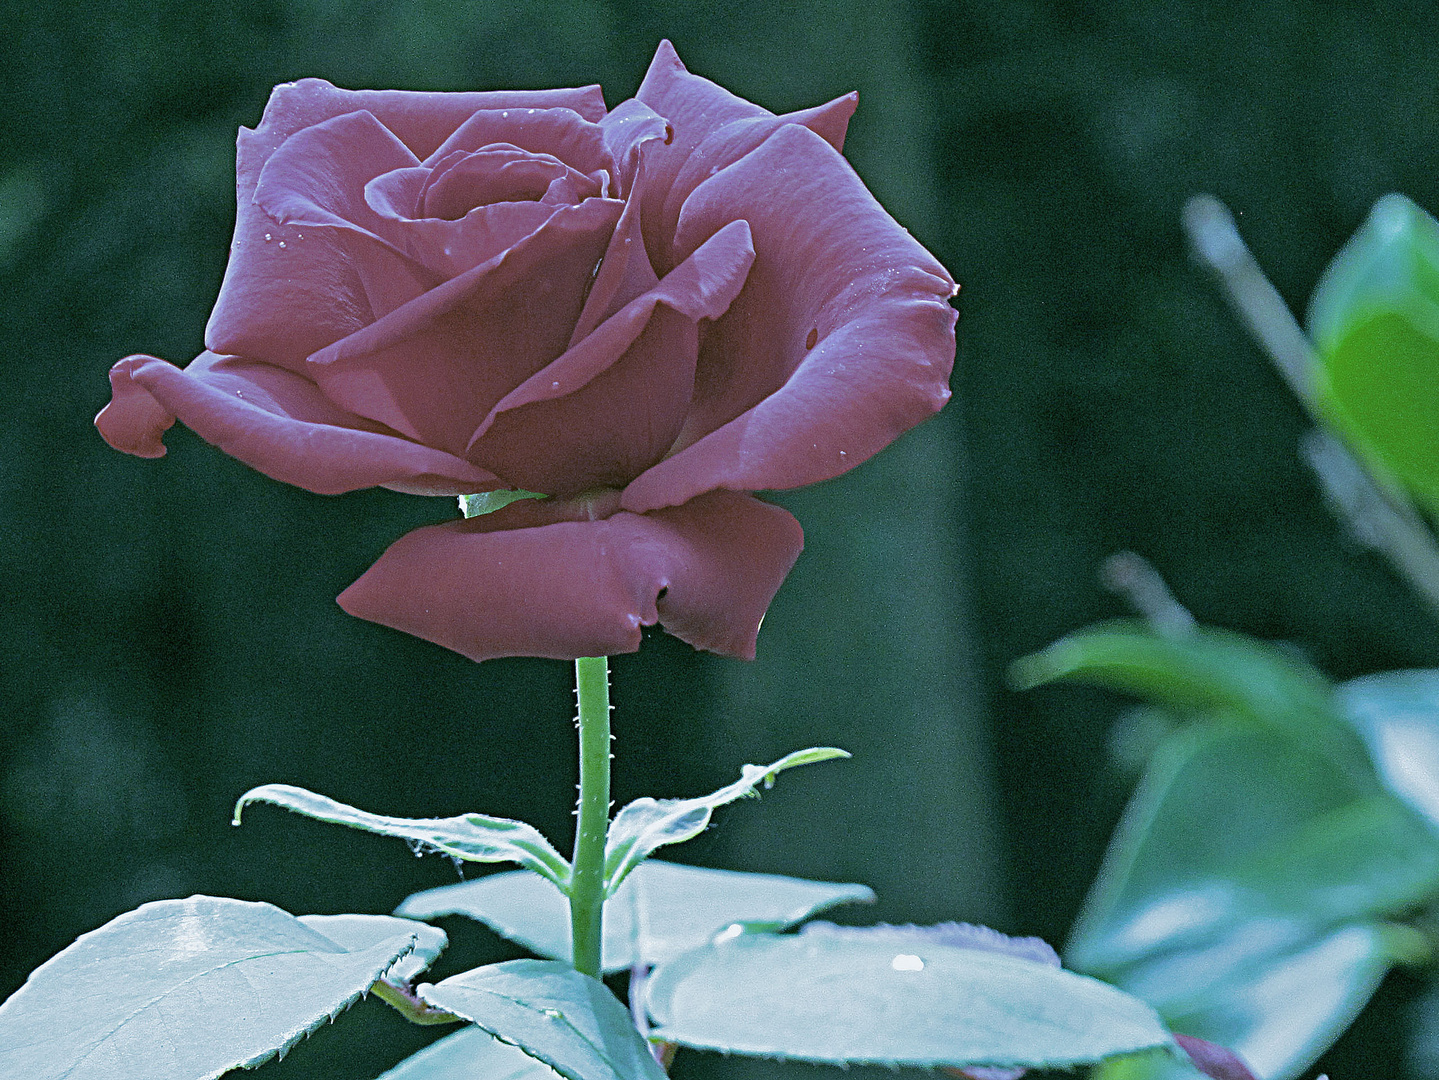 Bild 1: Bearbeitete Rosenblüte aus Uschis Garten.